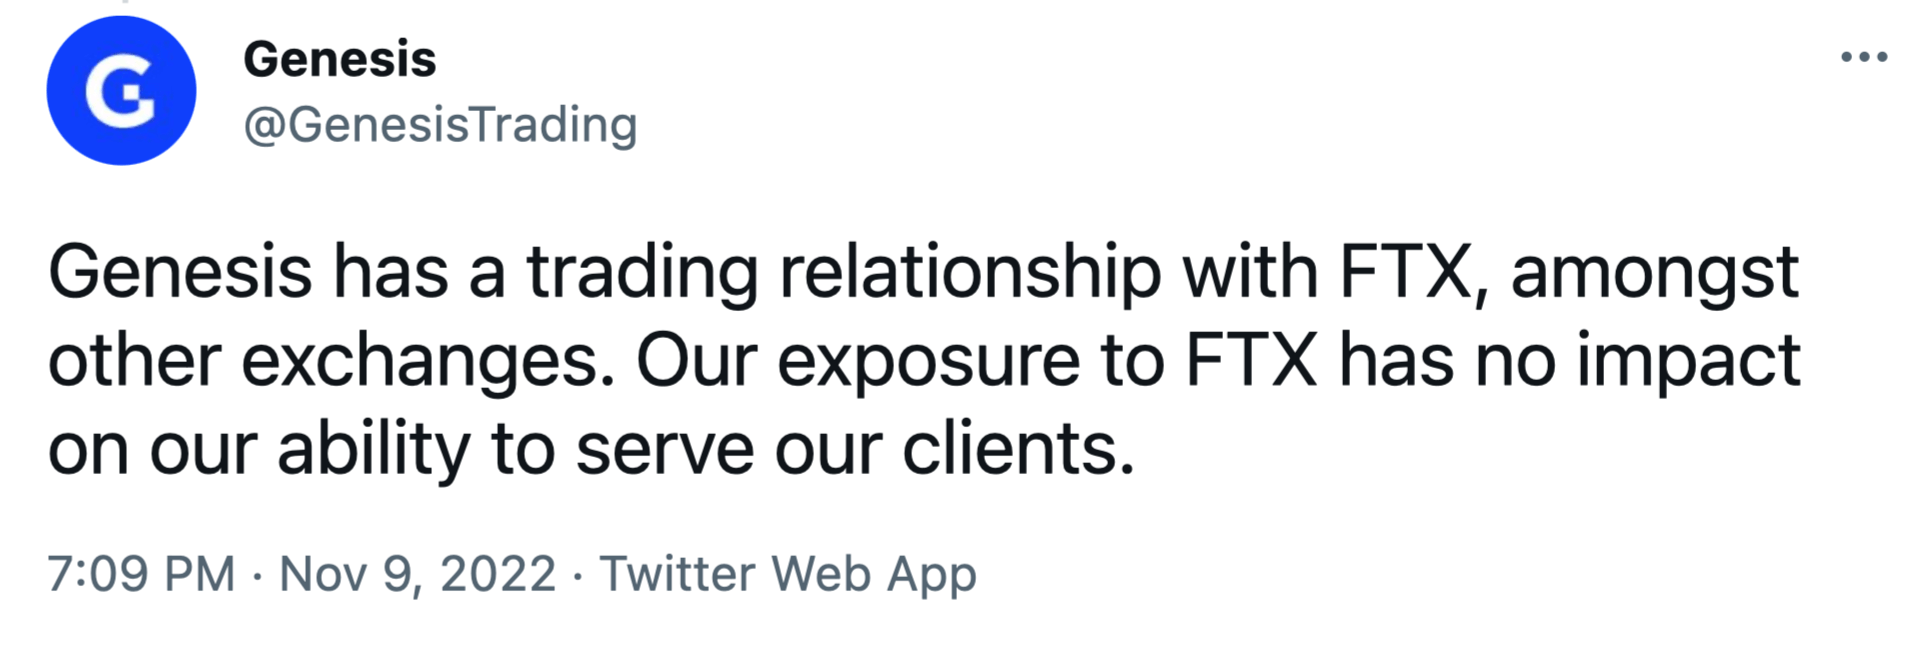 Что будет с криптовалютной биржей FTX. Твит представителей Genesis о том, что связь компании с FTX якобы никак на ней не сказывается. Фото.